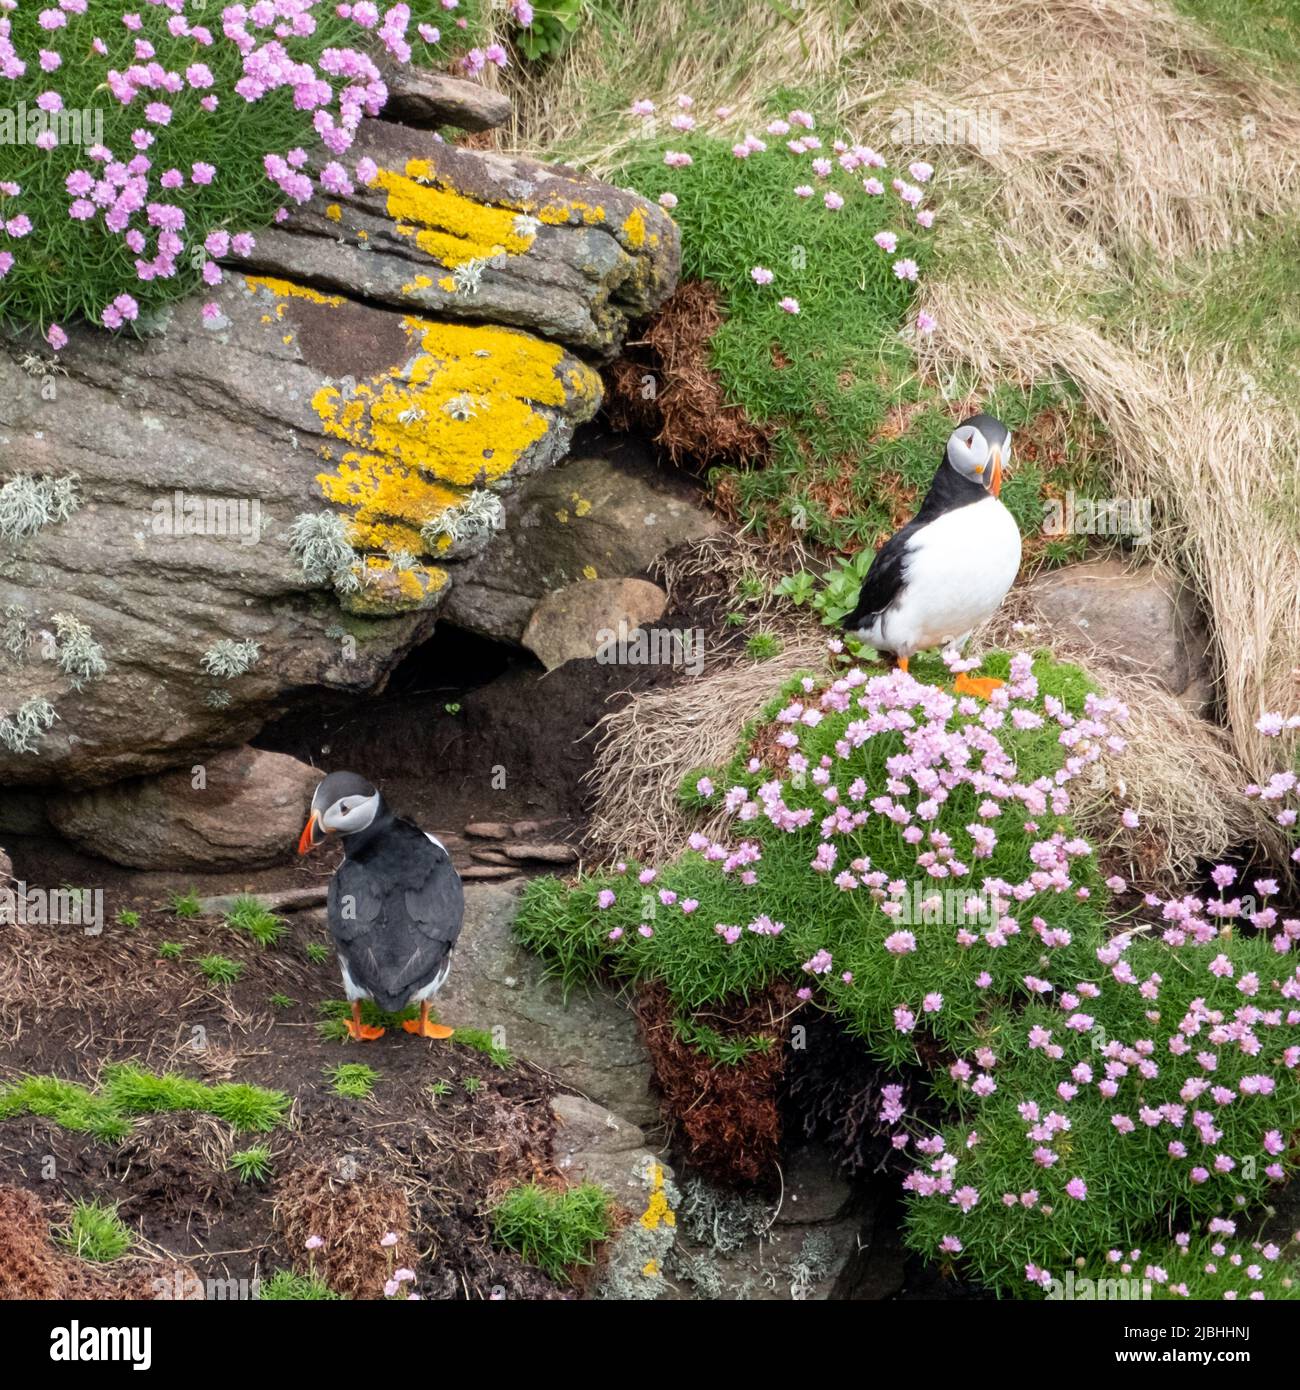 Puffin-Vogel auf der Klippe von Handa Island, einer kleinen Insel in der Nähe von Scourie in Sutherland an der Nordwestküste Schottlands. Stockfoto